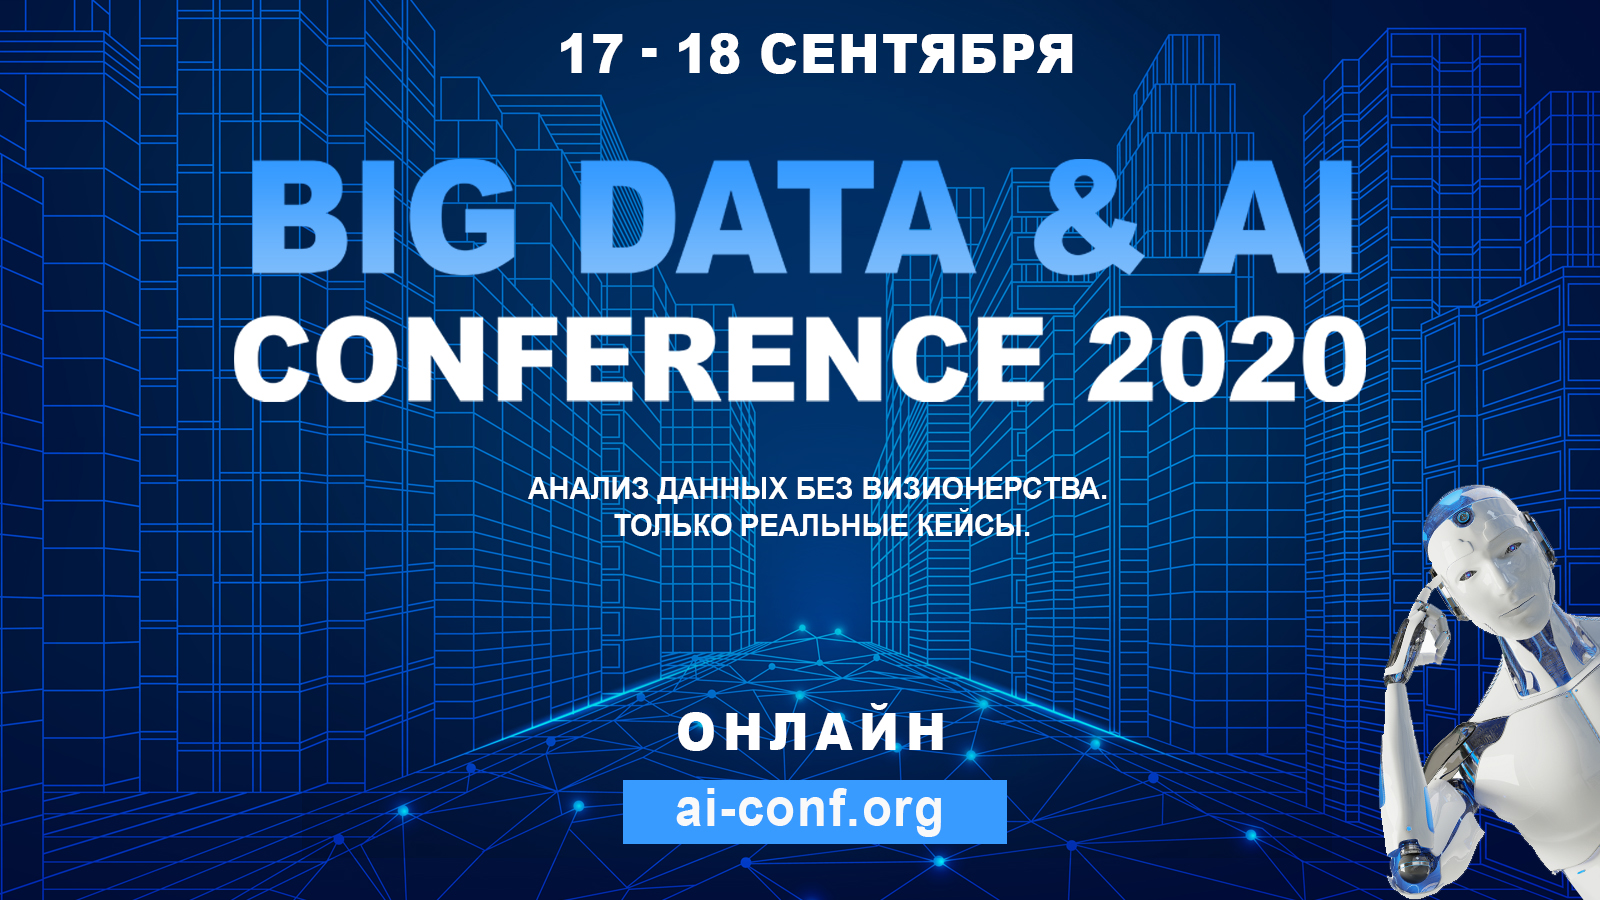 - Big Data & AI Conference 2020